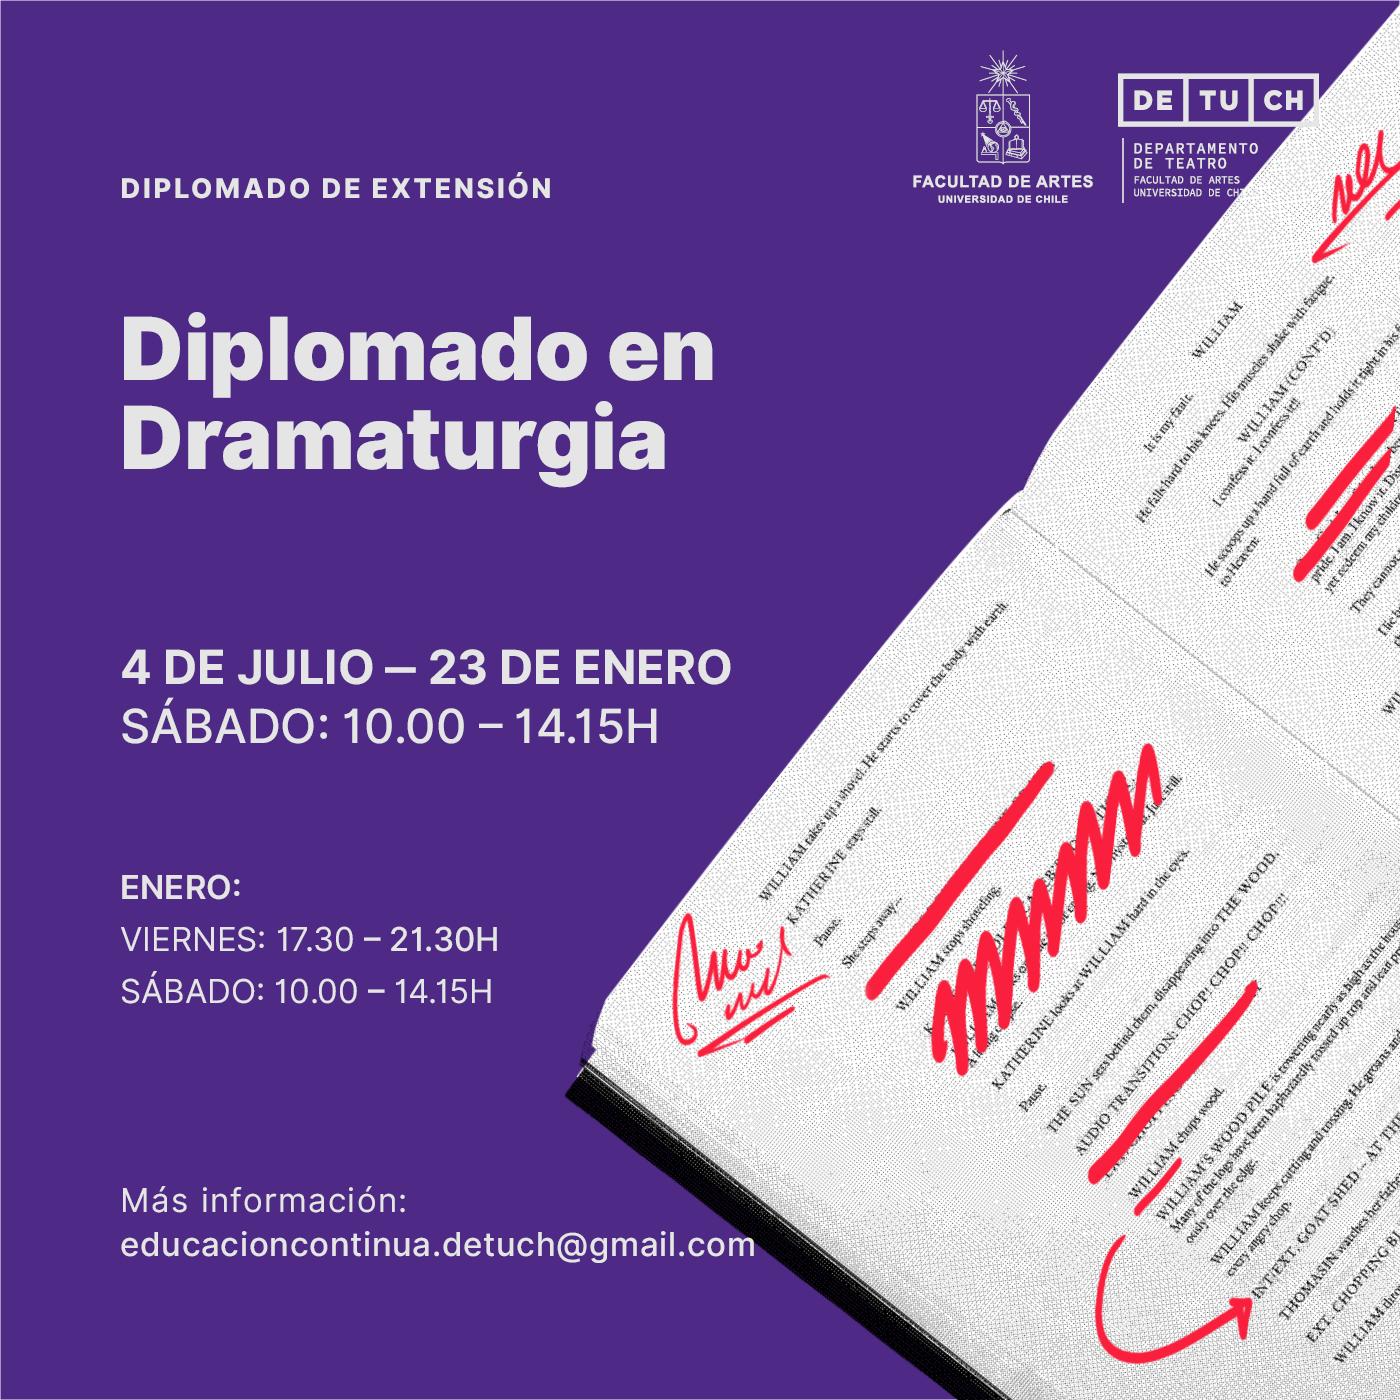 El Diplomado de Extensión en Dramaturgia comienza el 4 de julio vía online.